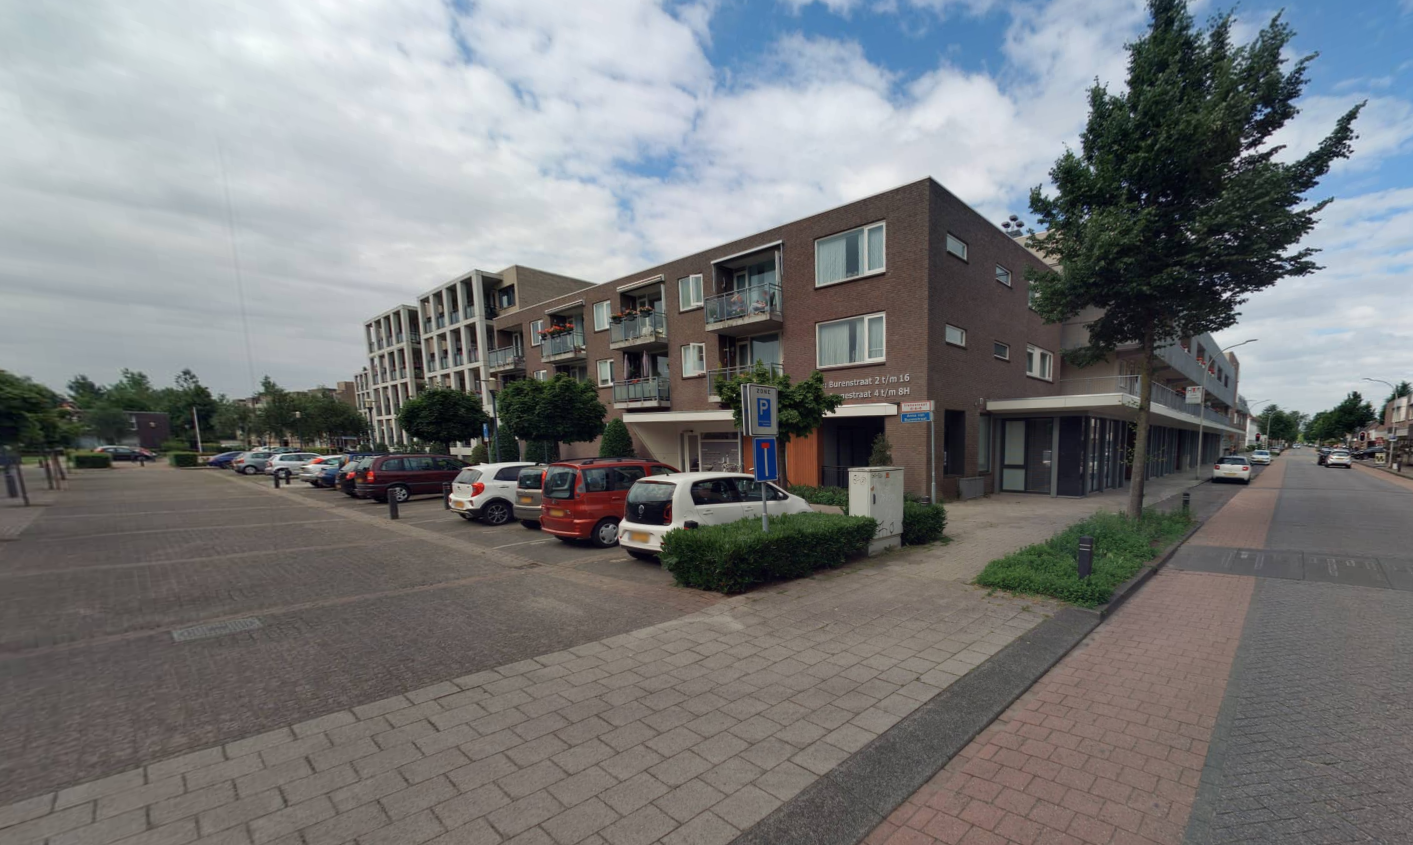 Anna van Burenstraat 12, 5141 DG Waalwijk, Nederland